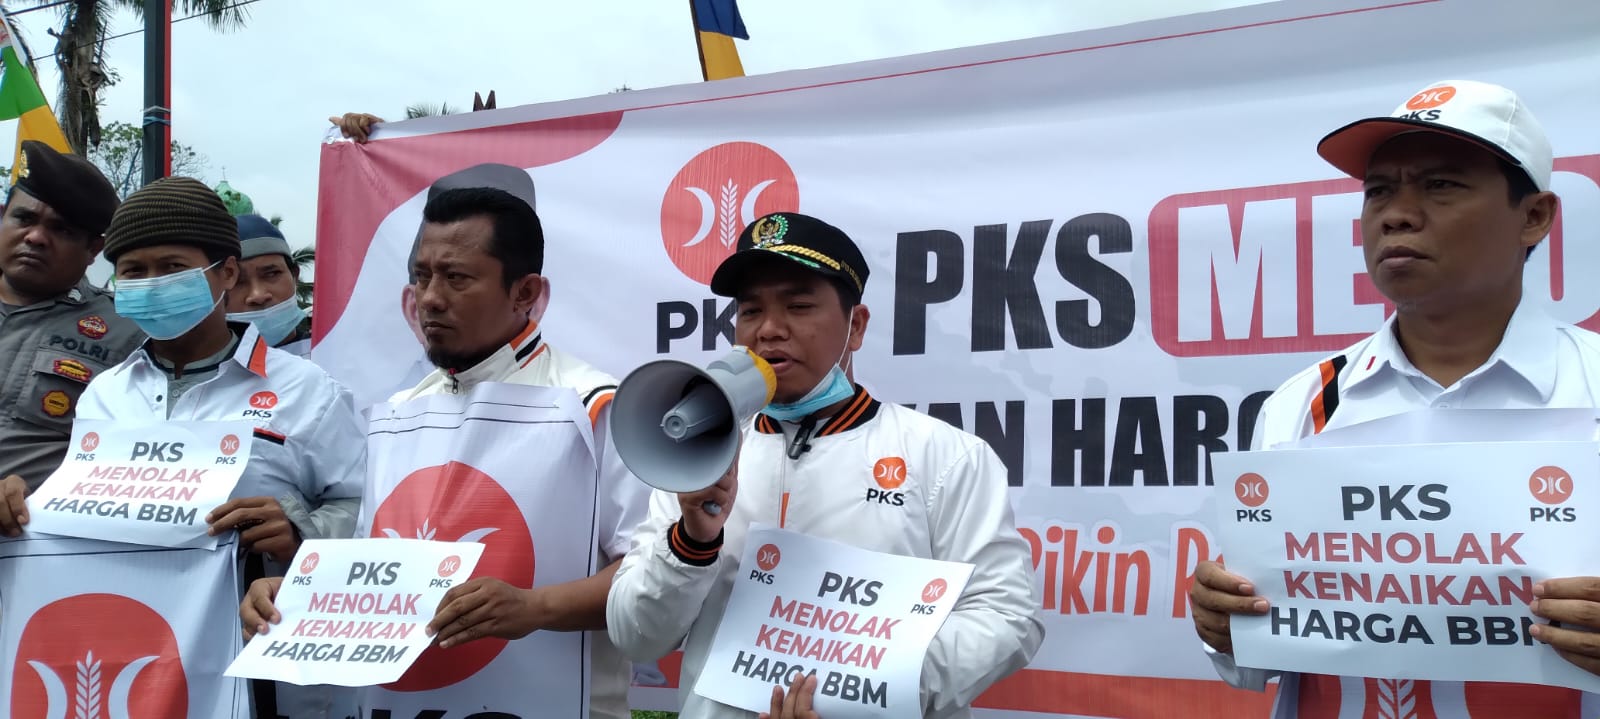 Aksi Flash Mob, PKS Sarolangun Turun ke Jalan Protes Kenaikan Harga BBM